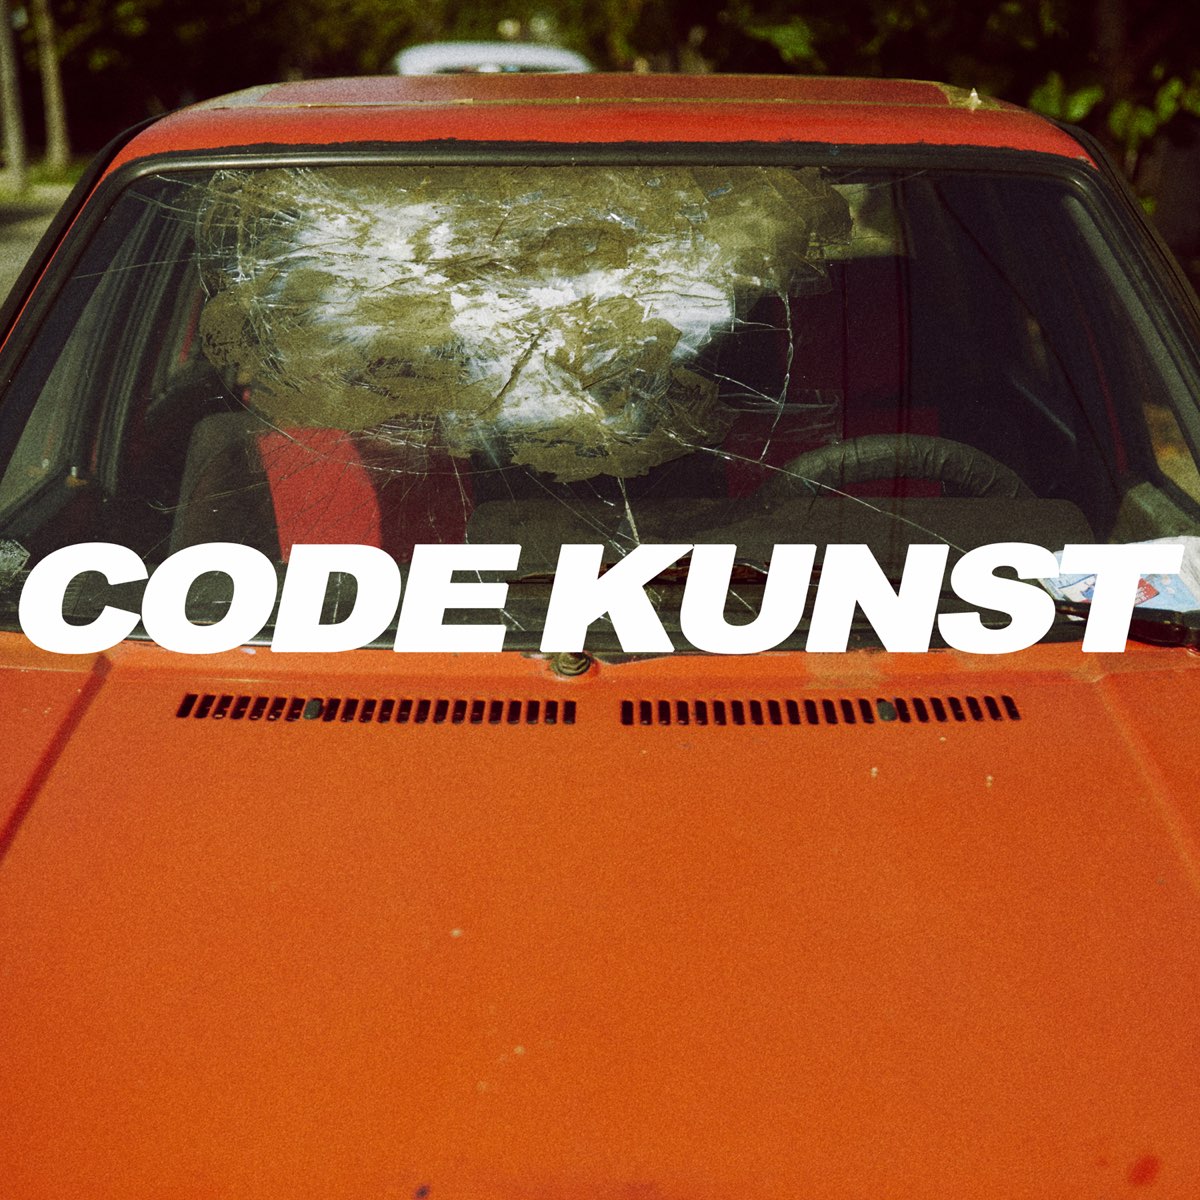 Rain Bird - Single by CODE KUNST on Apple Music